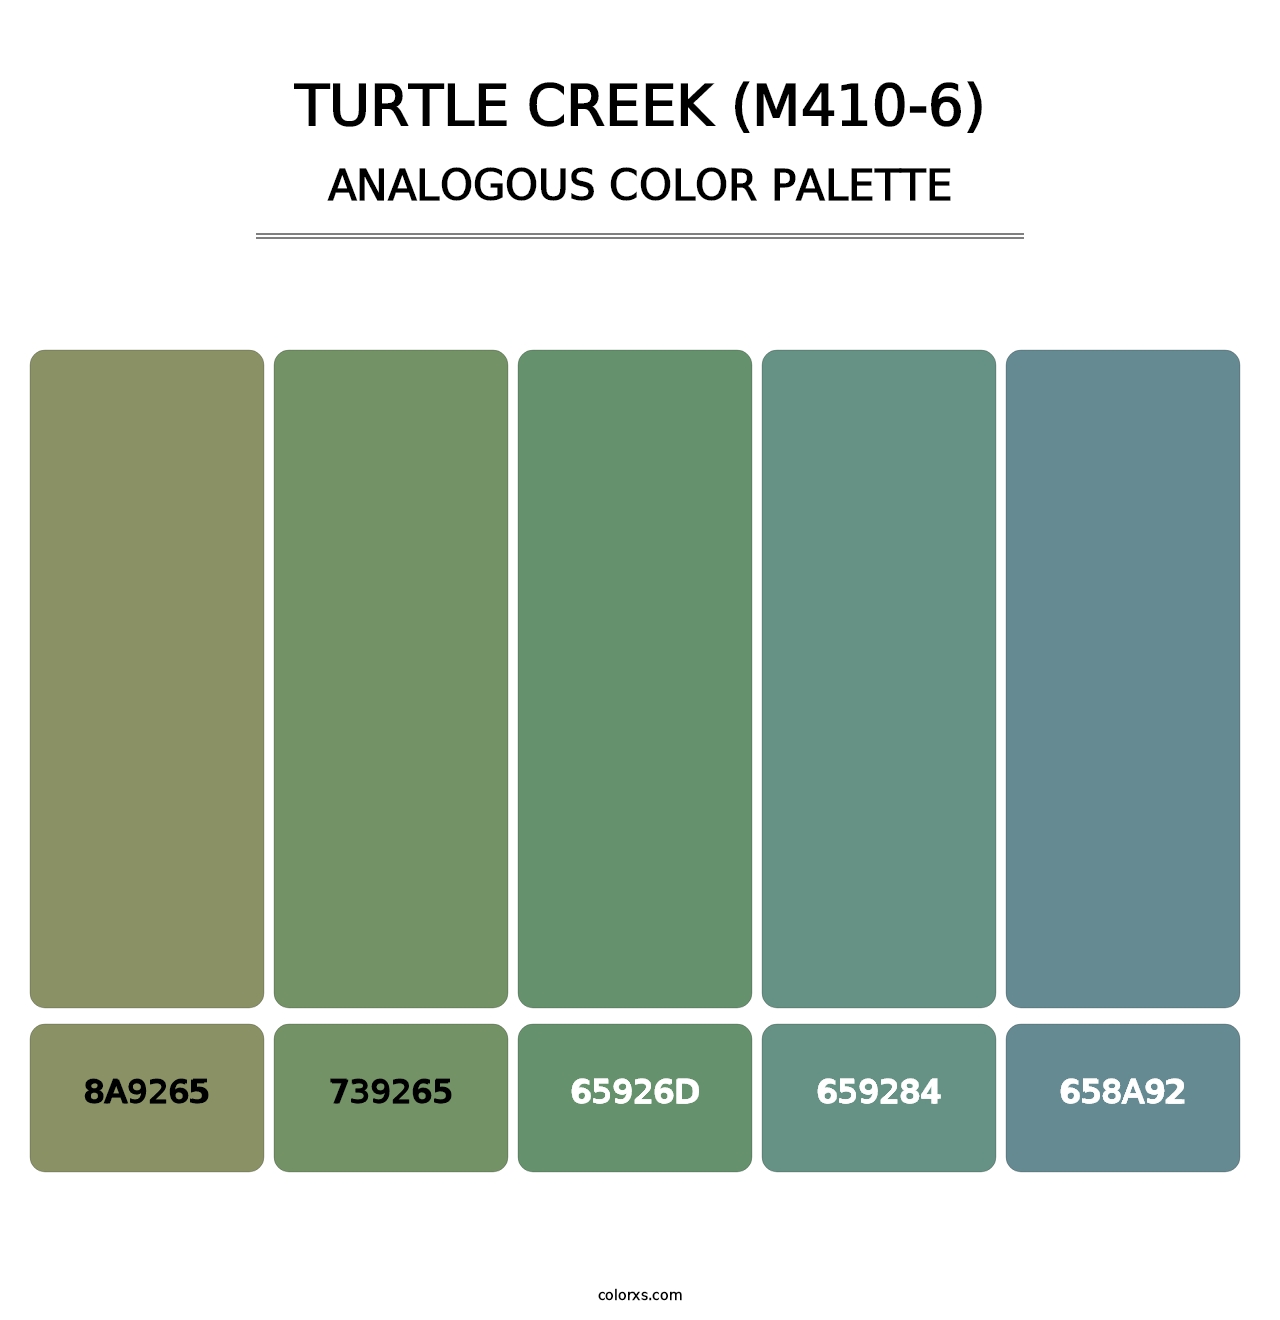 Turtle Creek (M410-6) - Analogous Color Palette